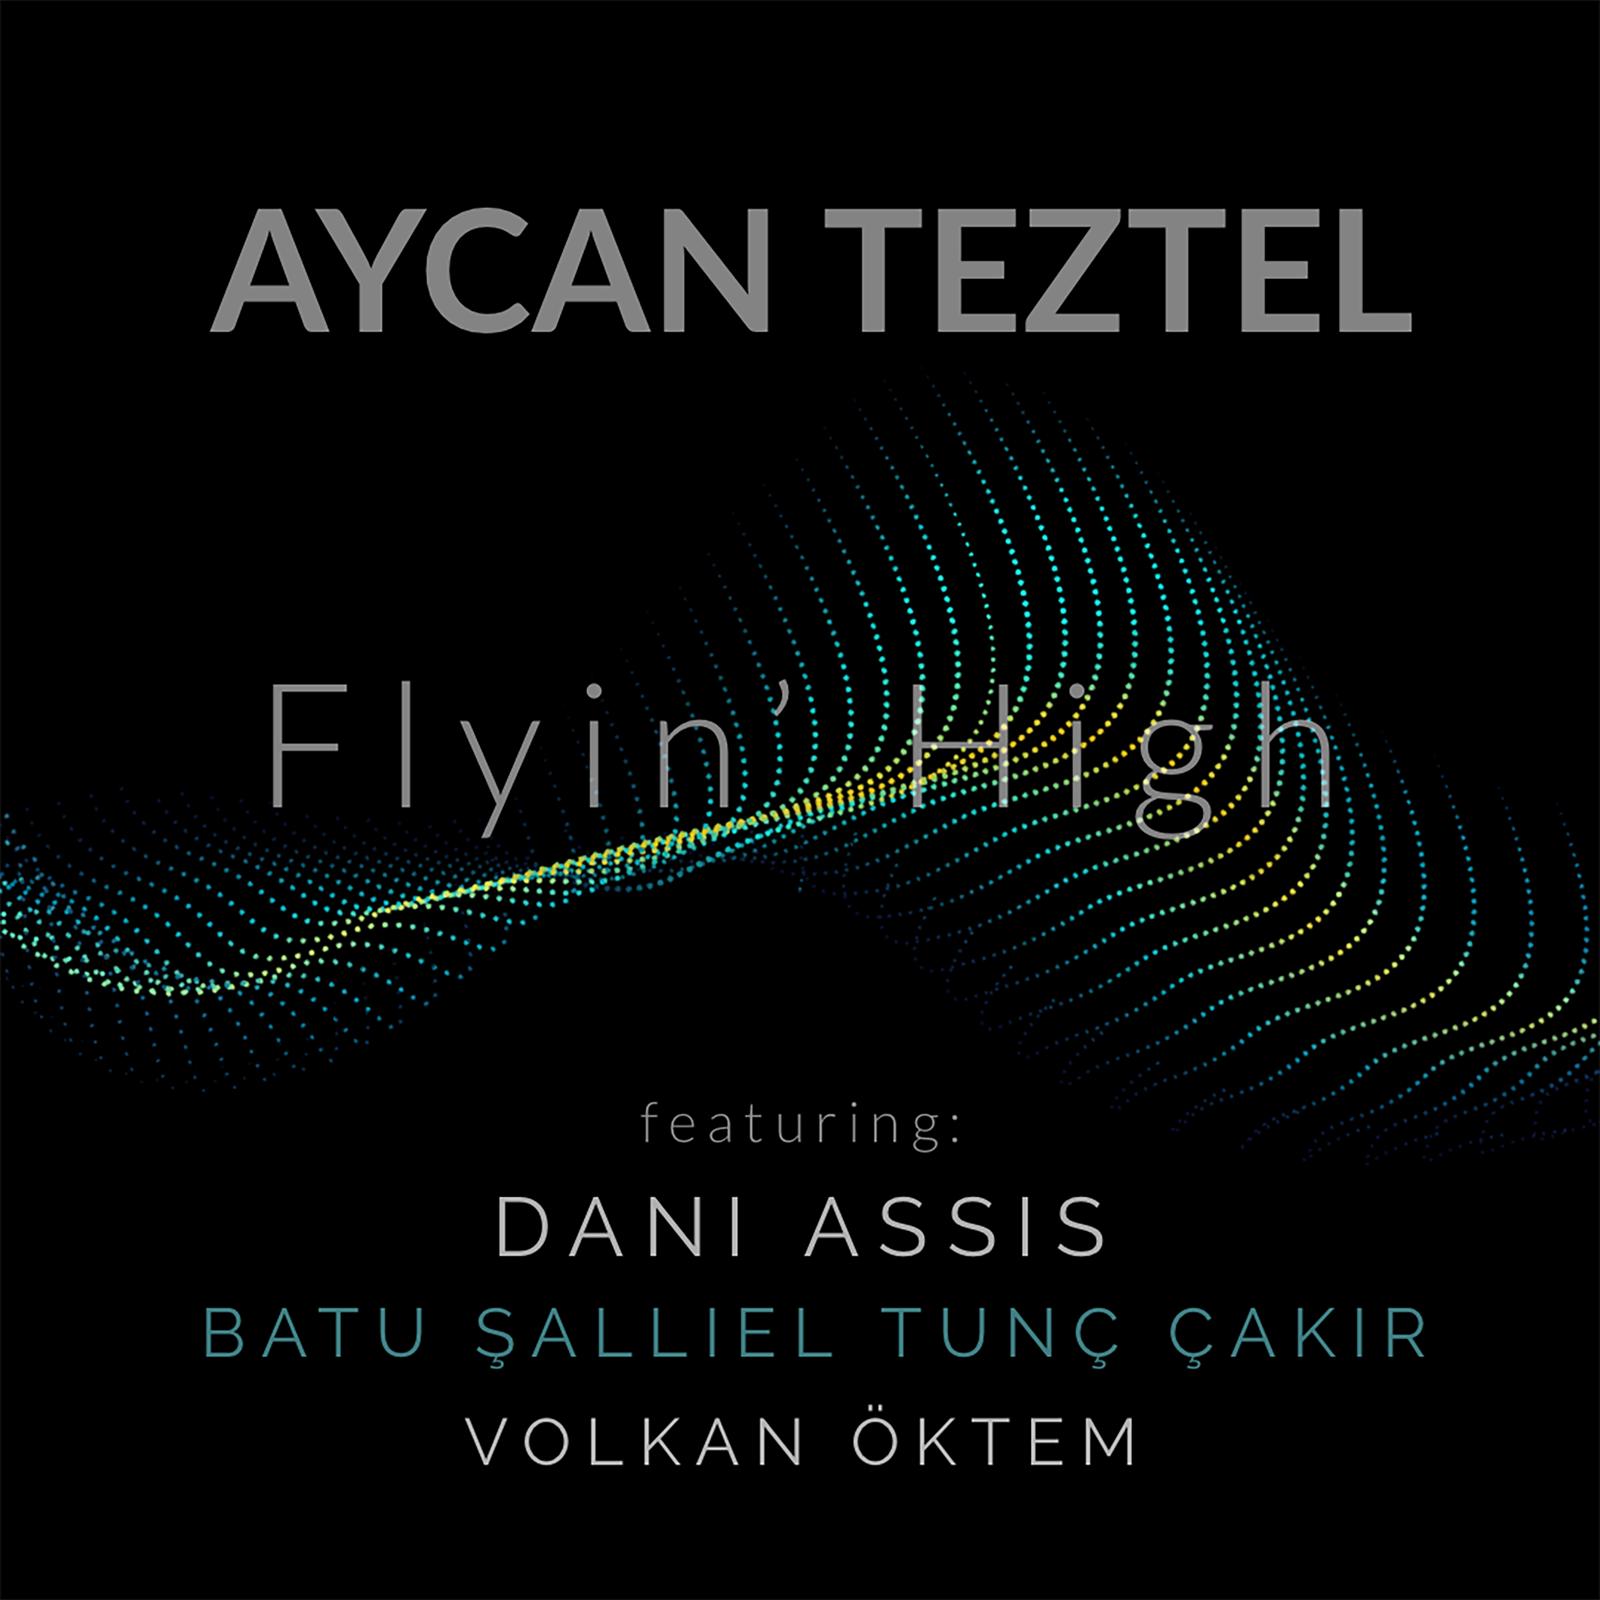 Aycan Teztel Flyin' High